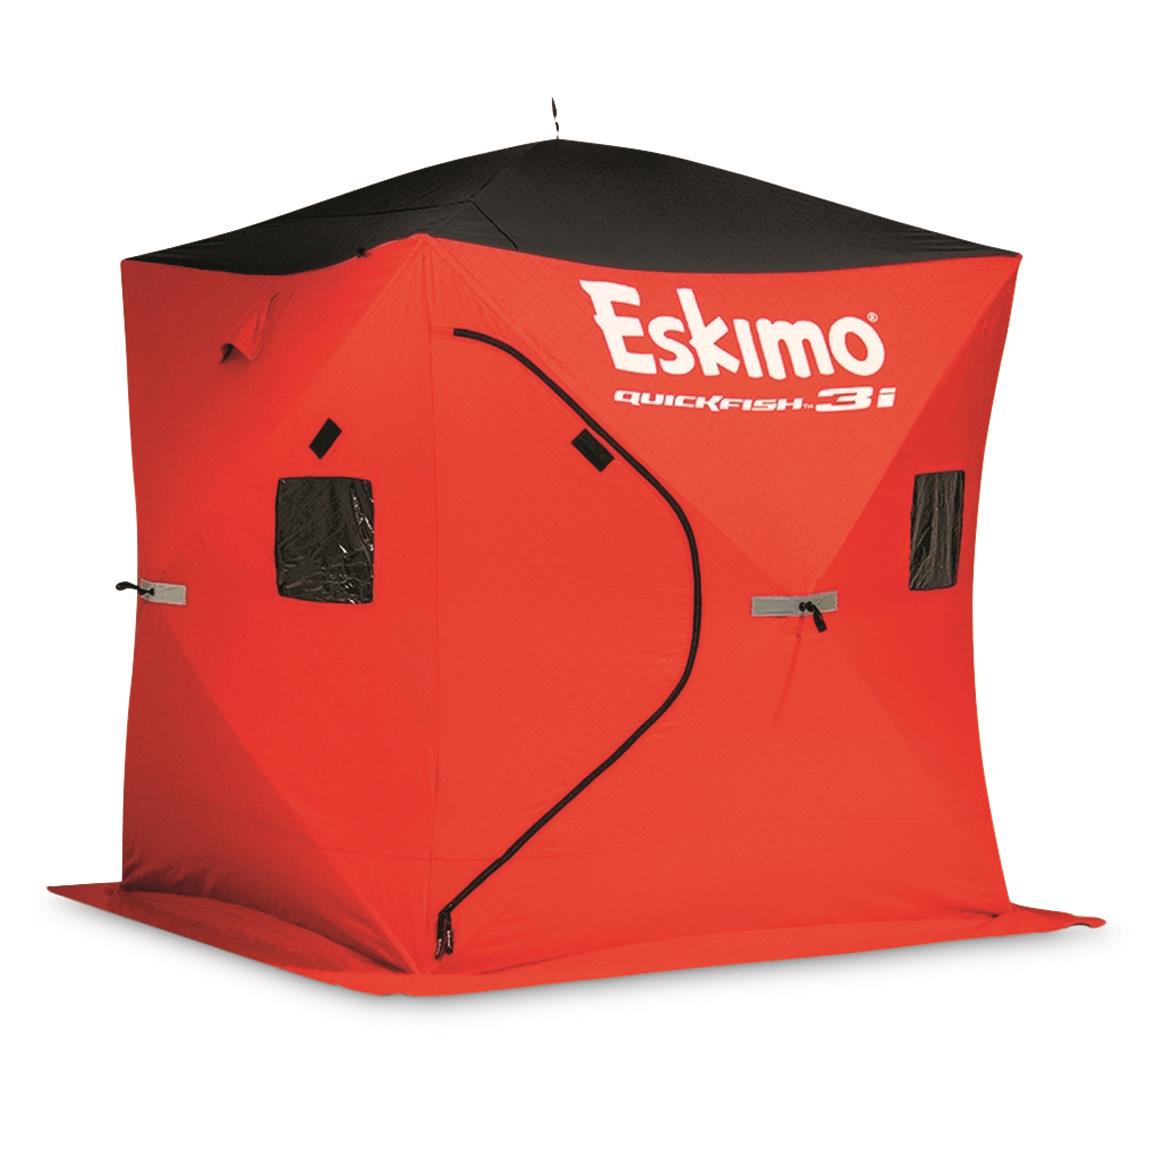 Eskimo Quickfish 3i Insulated Ice Shelter